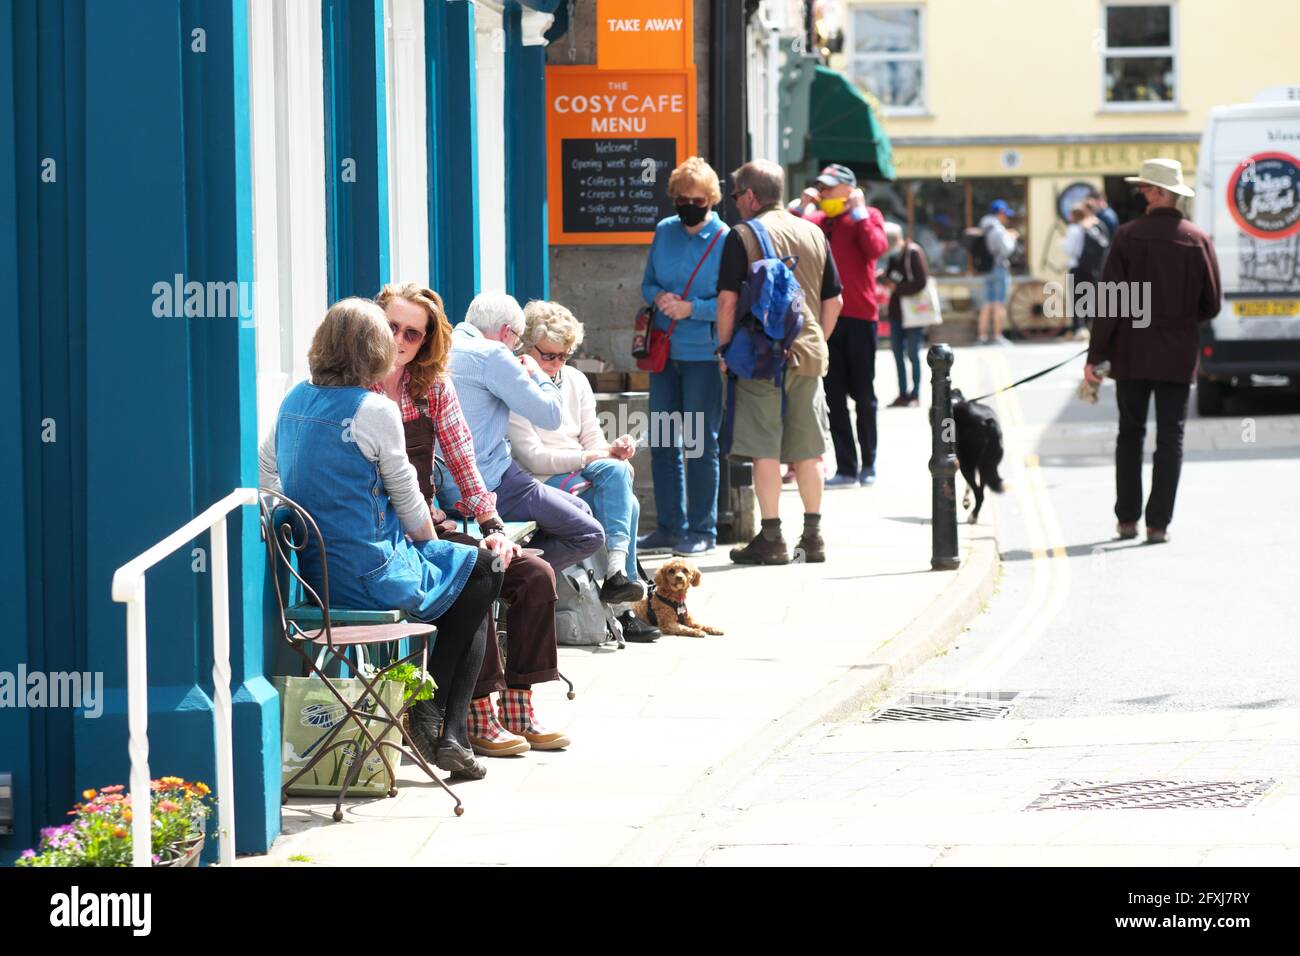 Hay on Wye, Powys, pays de Galles – jeudi 27 mai 2021 – jour d'ouverture de cette année Hay Festival qui est diffusé en direct depuis la ville du livre pendant 12 jours jusqu'au 6 juin. Plus de 300 auteurs, universitaires, décideurs et innovateurs prendront part à des événements qui sont libres de regarder en ligne pendant 24 heures à partir de leur diffusion initiale. Les visiteurs de la ville peuvent profiter d'un réseau Wi-Fi gratuit offrant une diffusion illimitée d'événements. Photo Steven May / Alamy Live News Banque D'Images